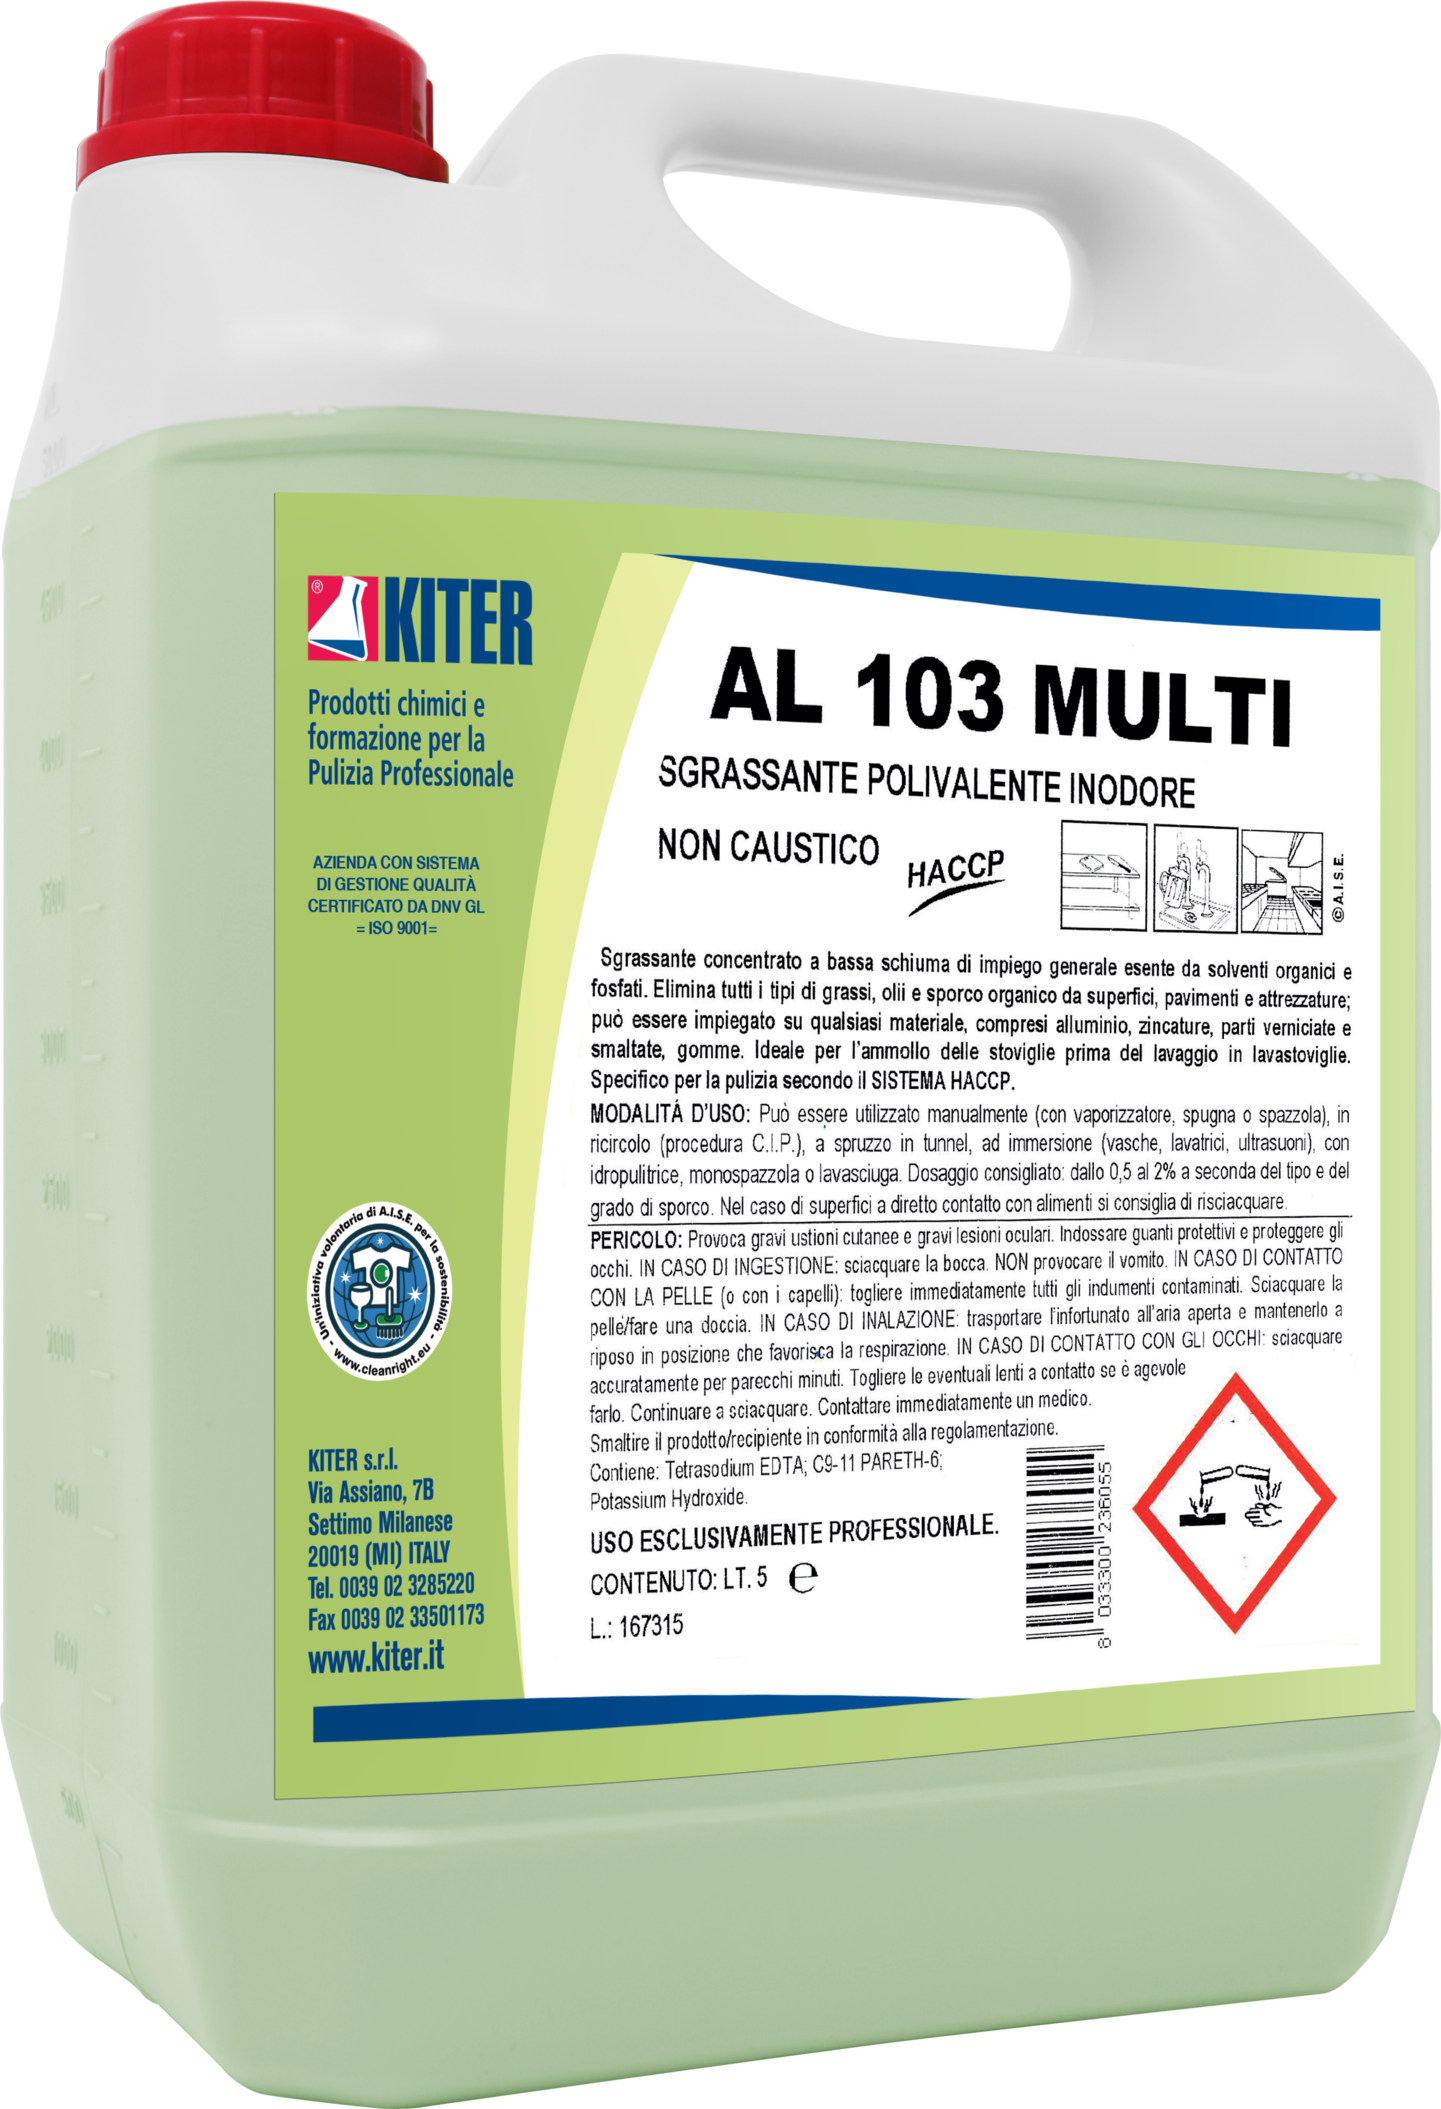 Некоррозійное знежирюючий засіб без запаху Kiter AL 103 Multi 5 л (14010.5L)